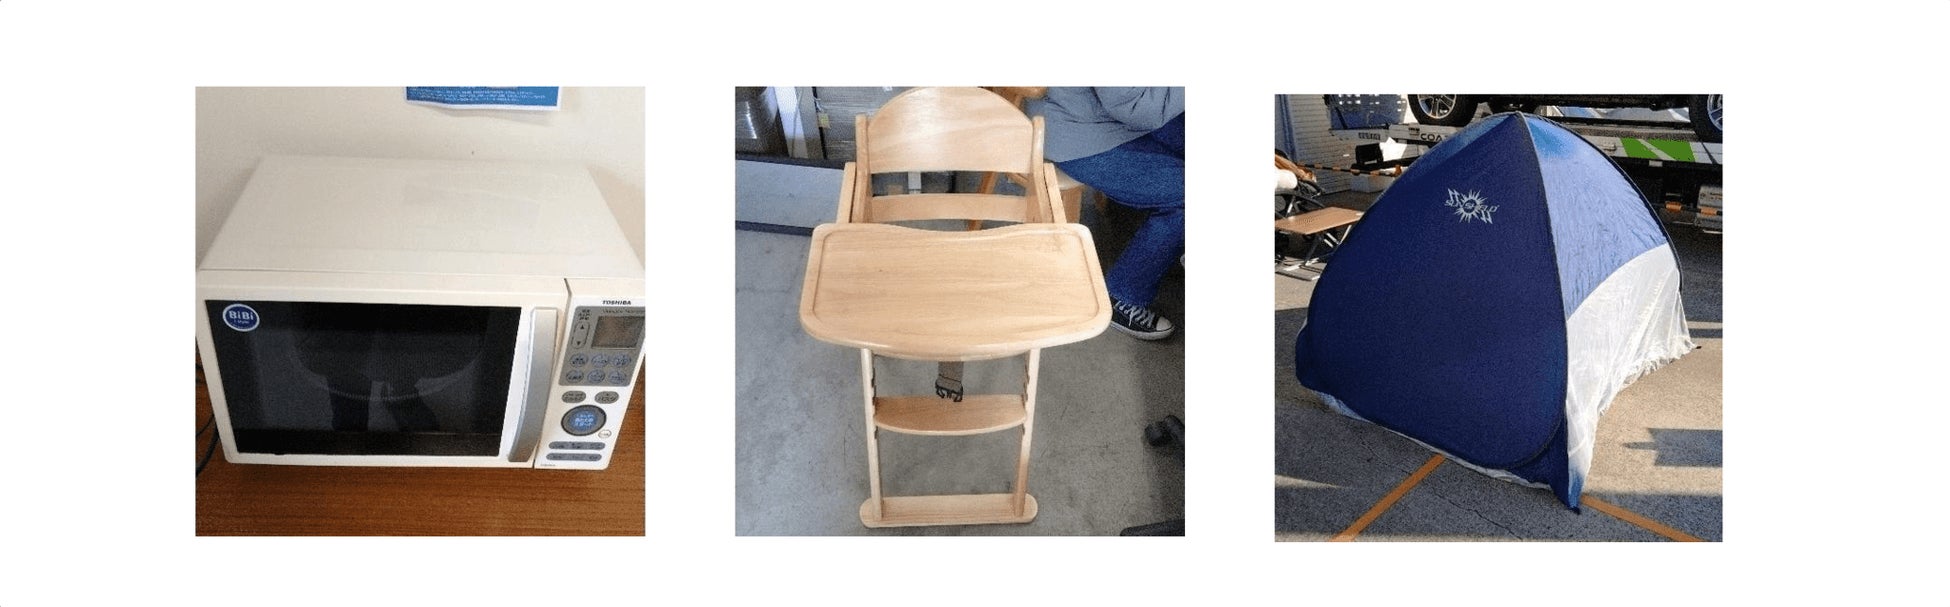 神奈川県川崎市と共同運営する官民連携のリユース拠点「ジモティースポット川崎」実証実験期間の延長が決定のサブ画像3_持ち込まれた電子レンジ、子供用椅子、テント